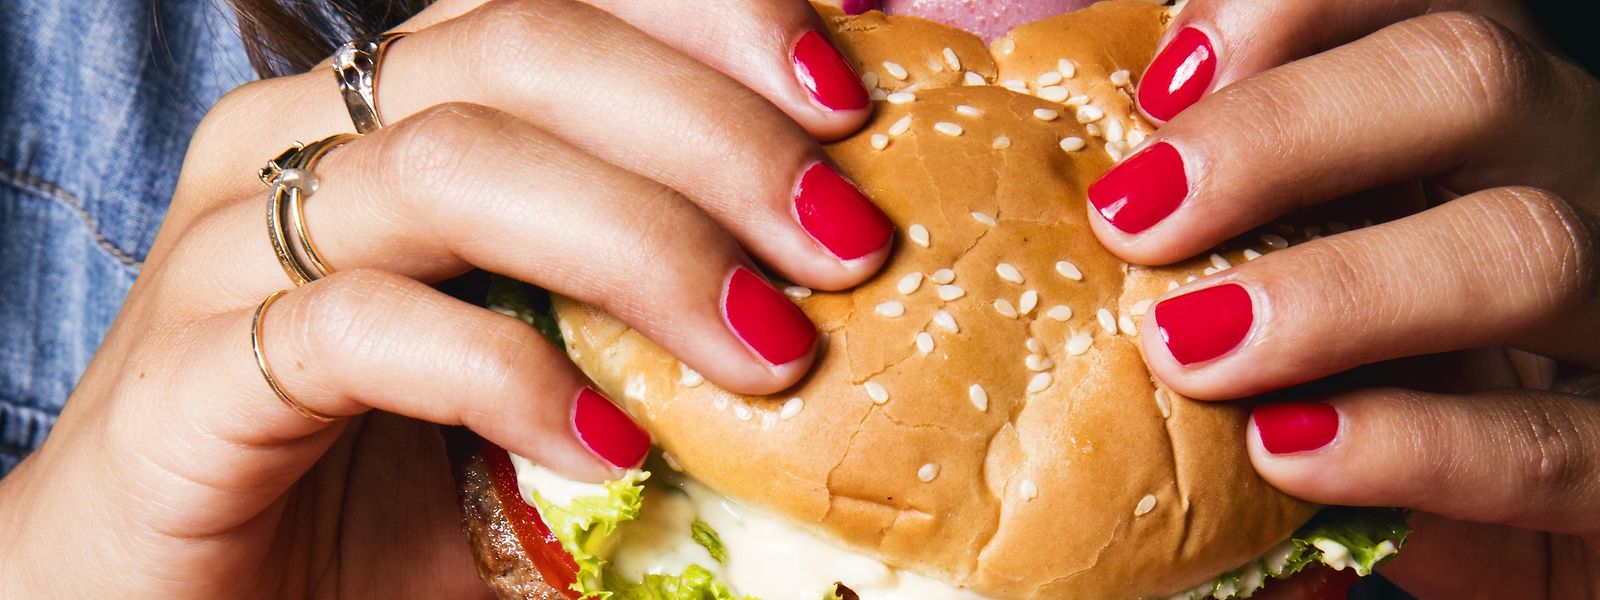 Der vegane Burger von Impossible Foods soll wie ein echter Burger aus Fleisch - und Blut - schmecken